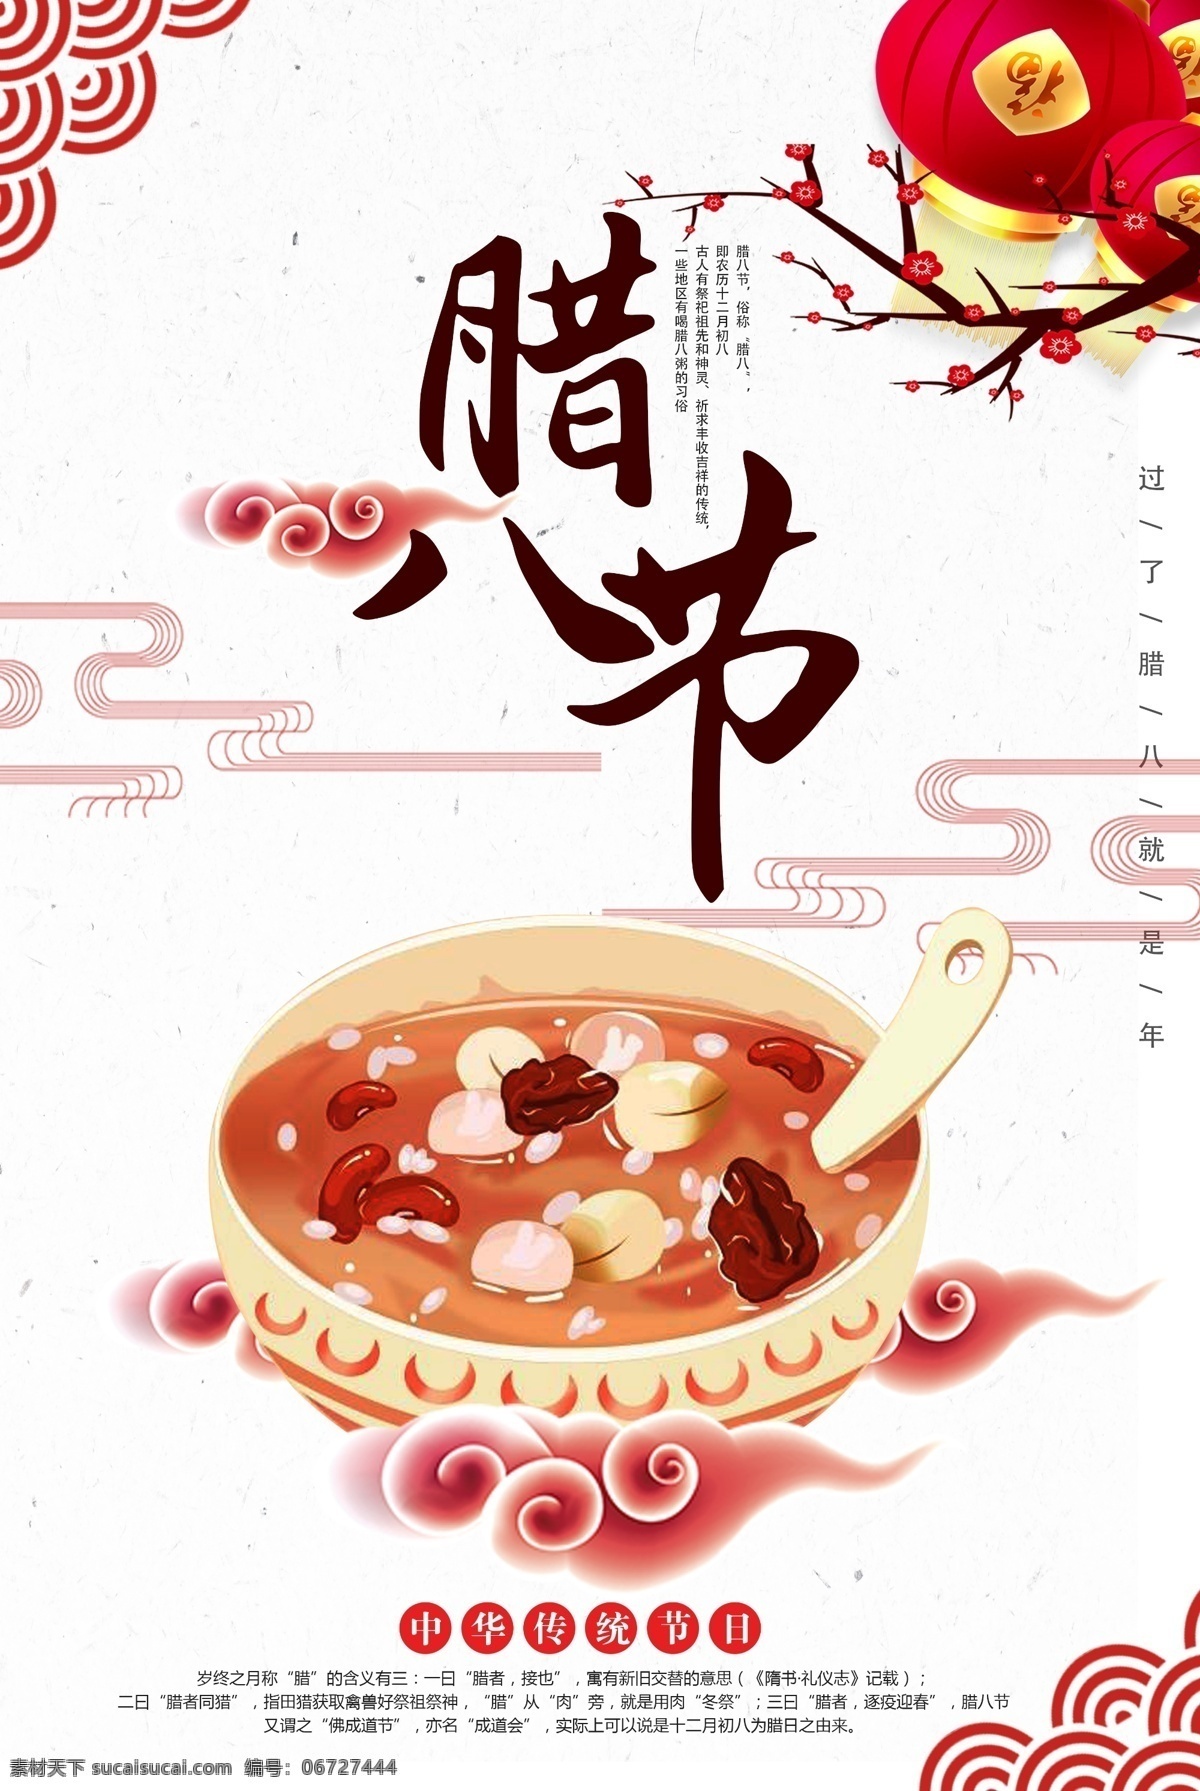 中国 风 节日 灯笼 物品 背景 格式 2018 促销 海报 上新 喜庆 新春